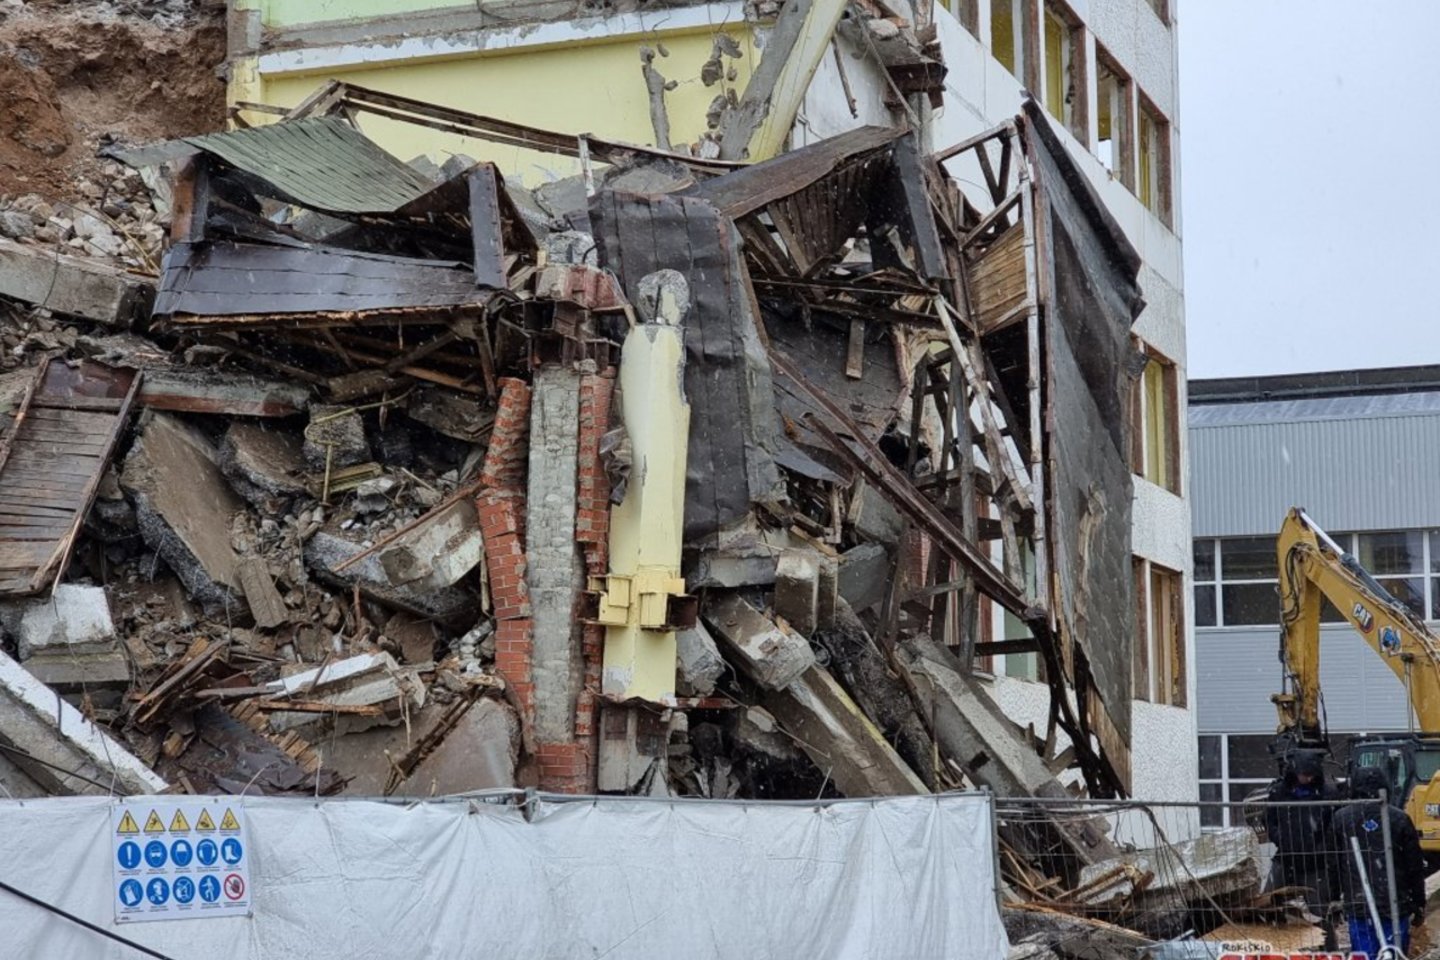  Pirmadienį Rokiškyje griaunant pastatą įvyko nelaimė.<br> Rokiskiosirena.lt nuotr.